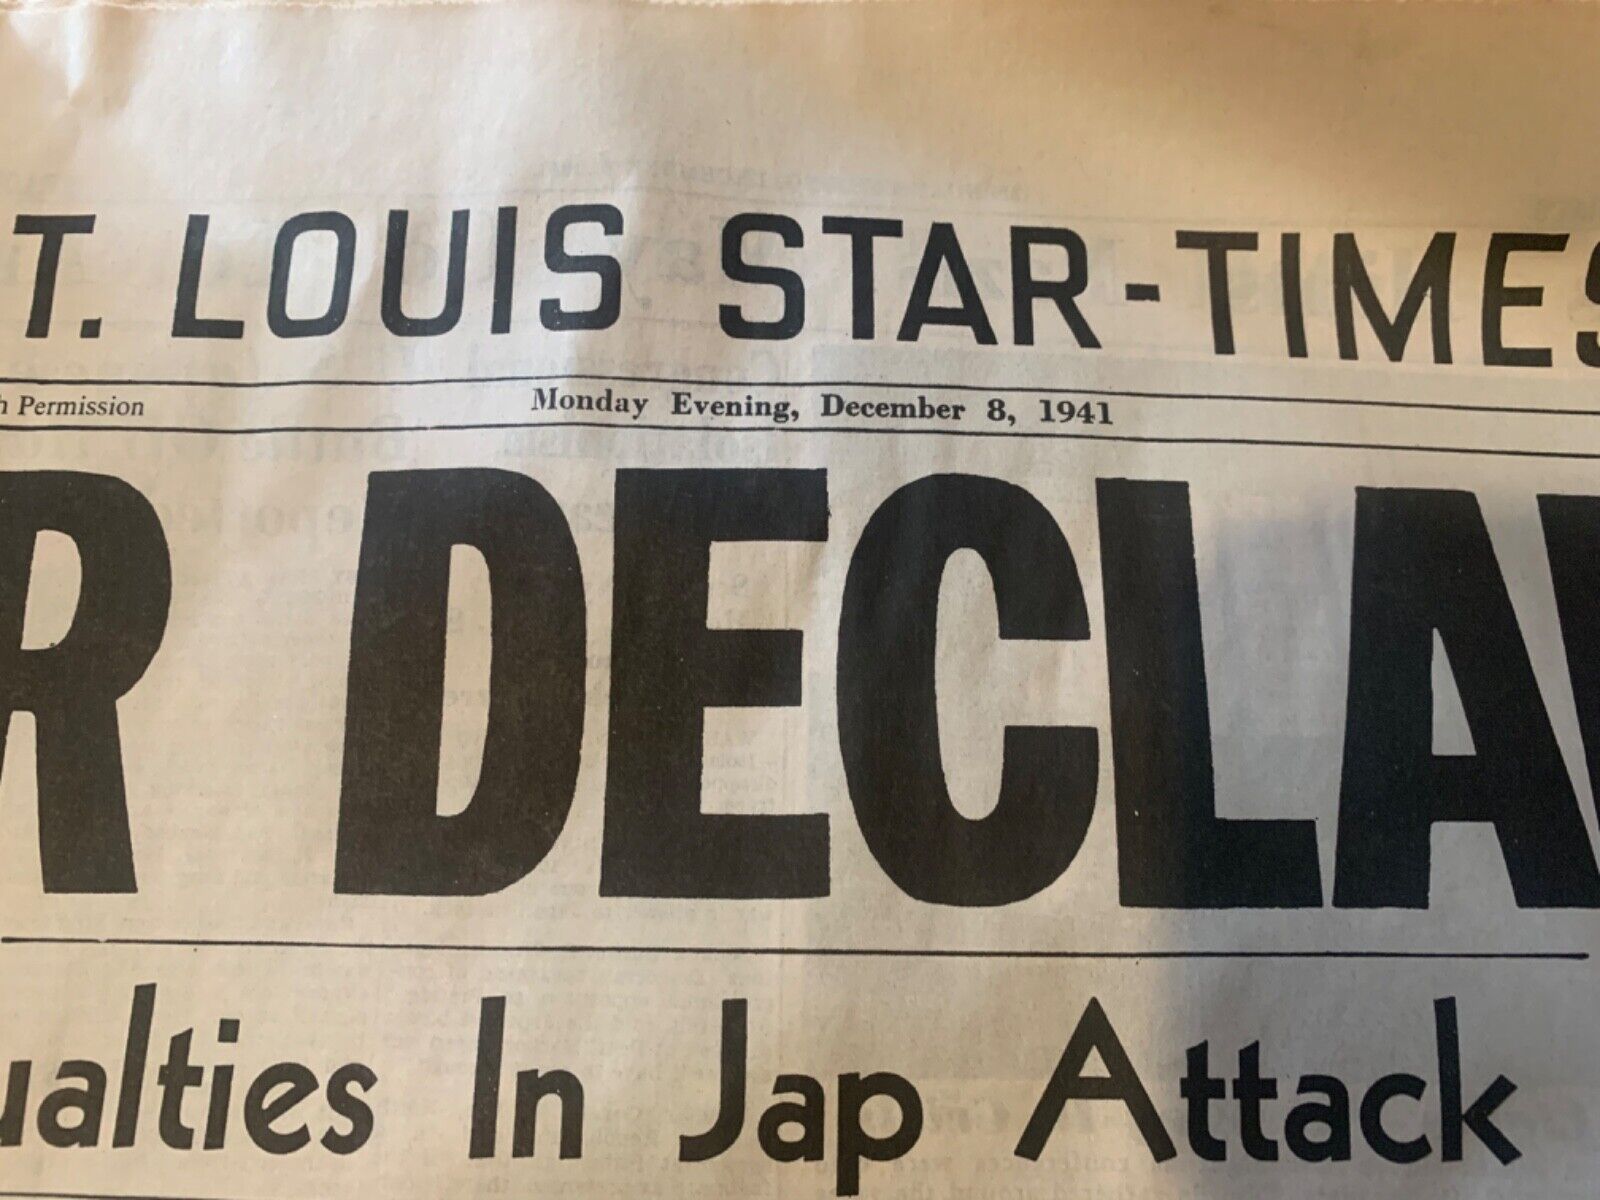 St. Louis Star -Times Dec 8 1941 War Declared, unbelievable shape 